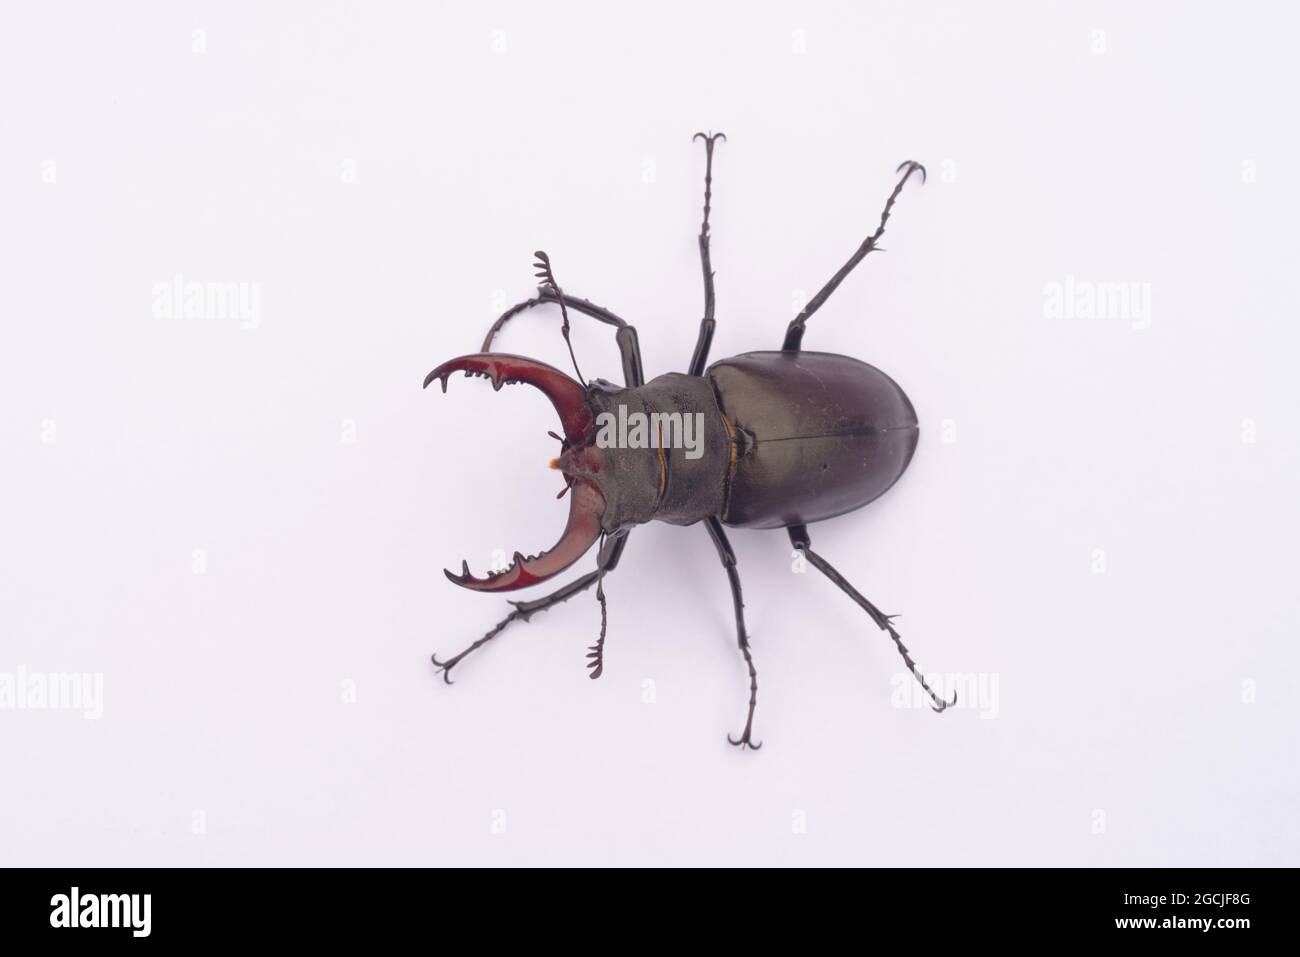 Gros plan sur un scarabée de cerf Lucanus cervus, sur fond blanc Banque D'Images